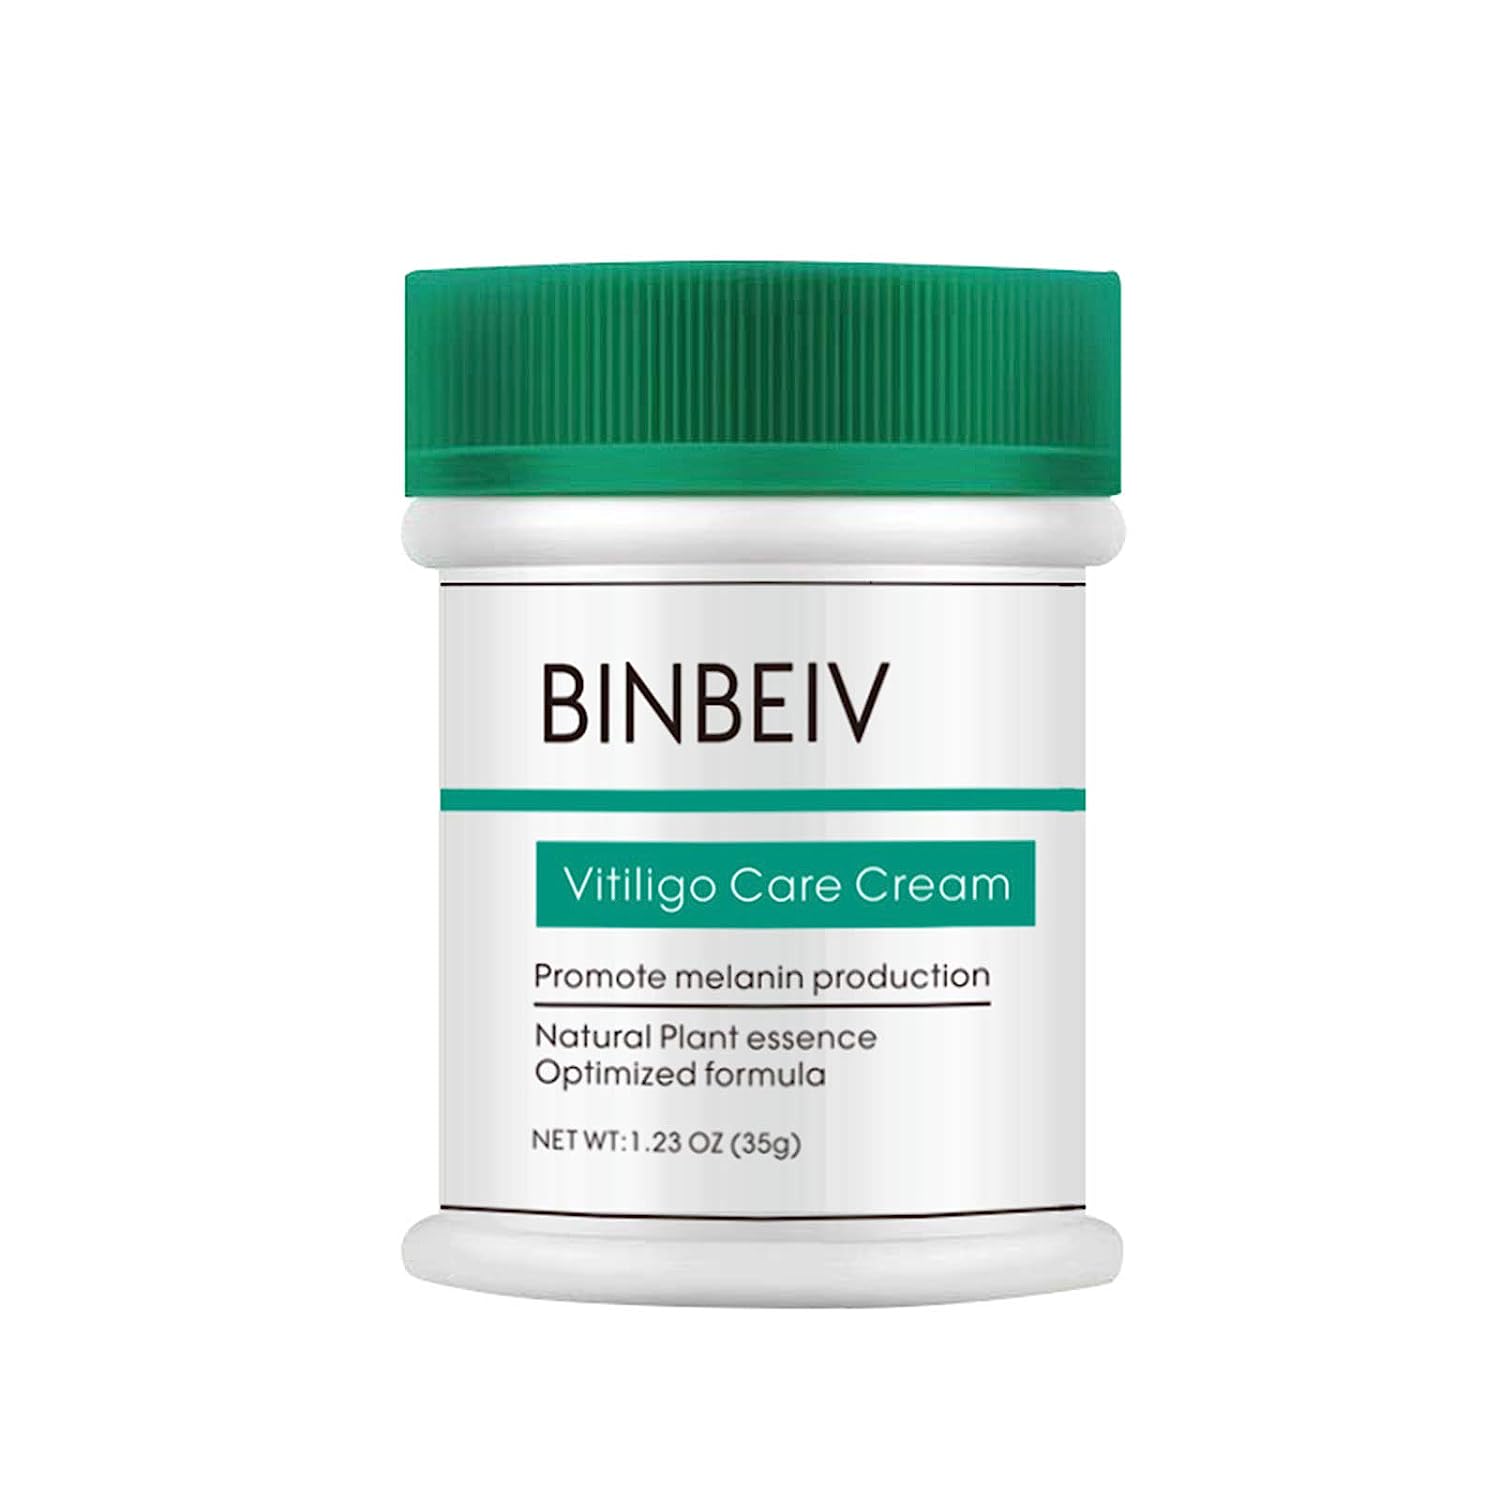 BINBEIV Vitiligo Care Cream, Pigmentation regulating [...]